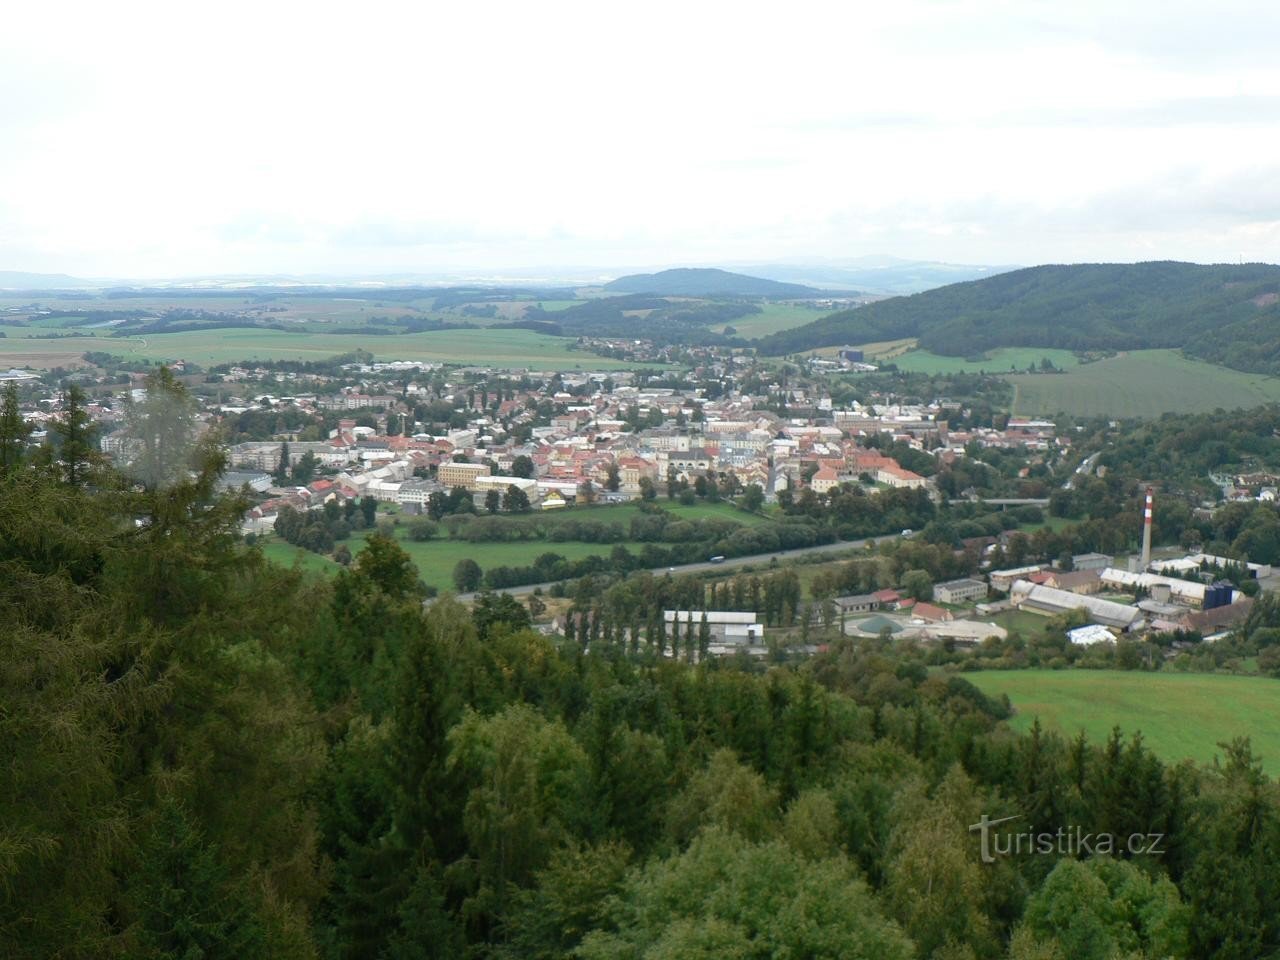 Άποψη της πόλης από την Pastýřka